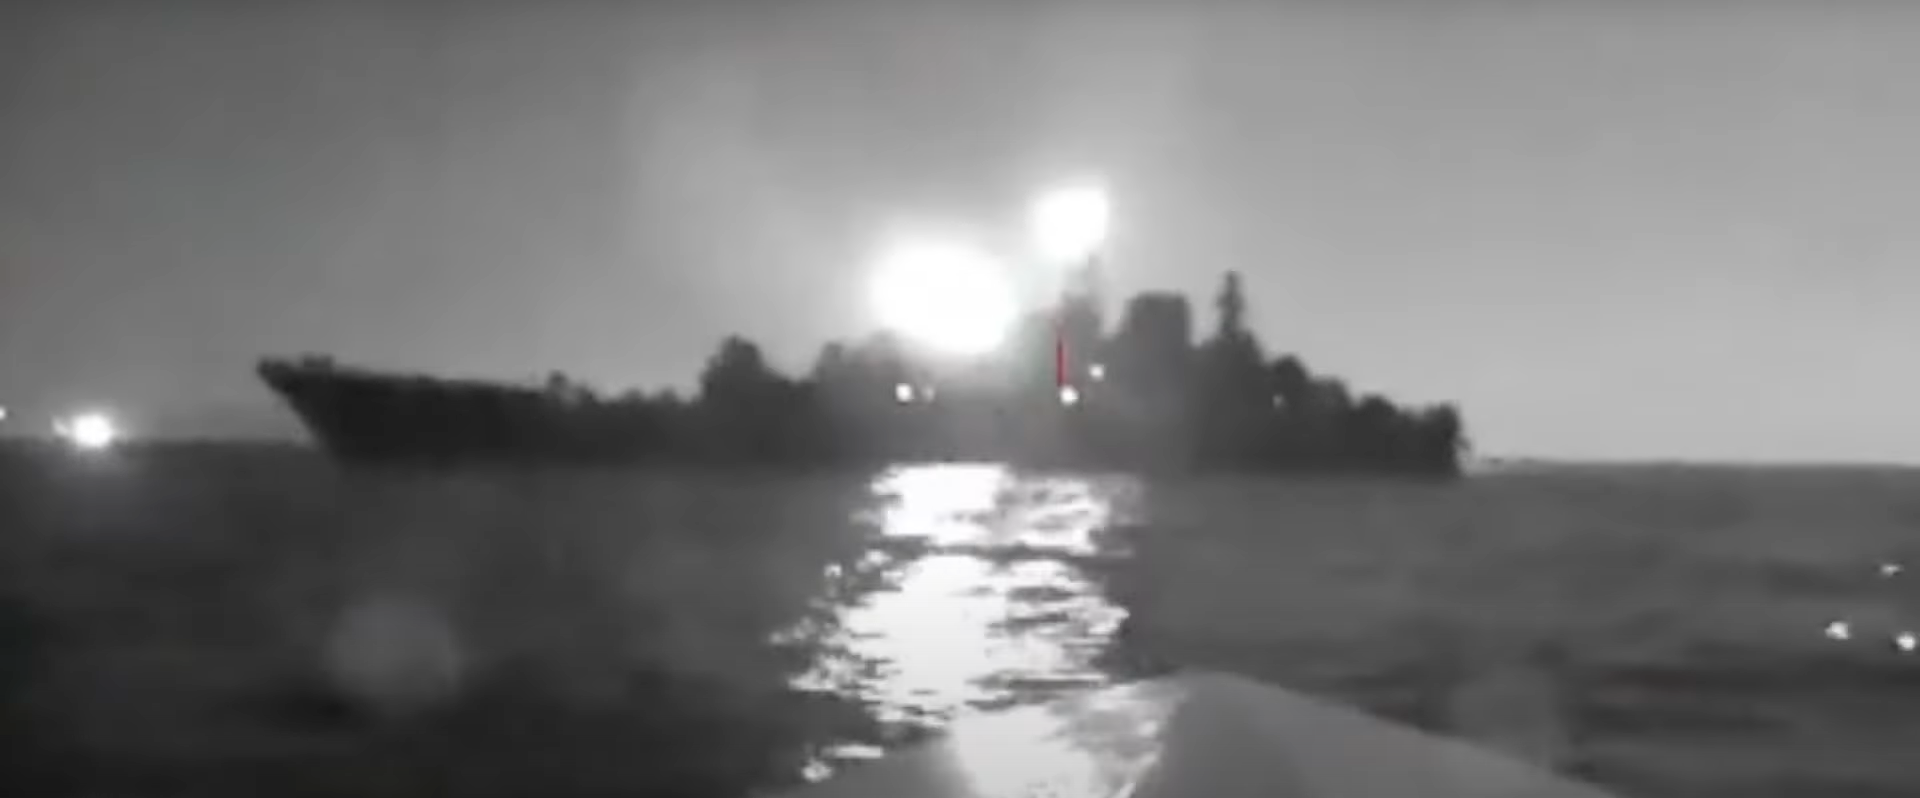 En video från en marin drönare som attackerade det stora ryska landningsfartyget Olenegorsk Miner har dykt upp på Internet